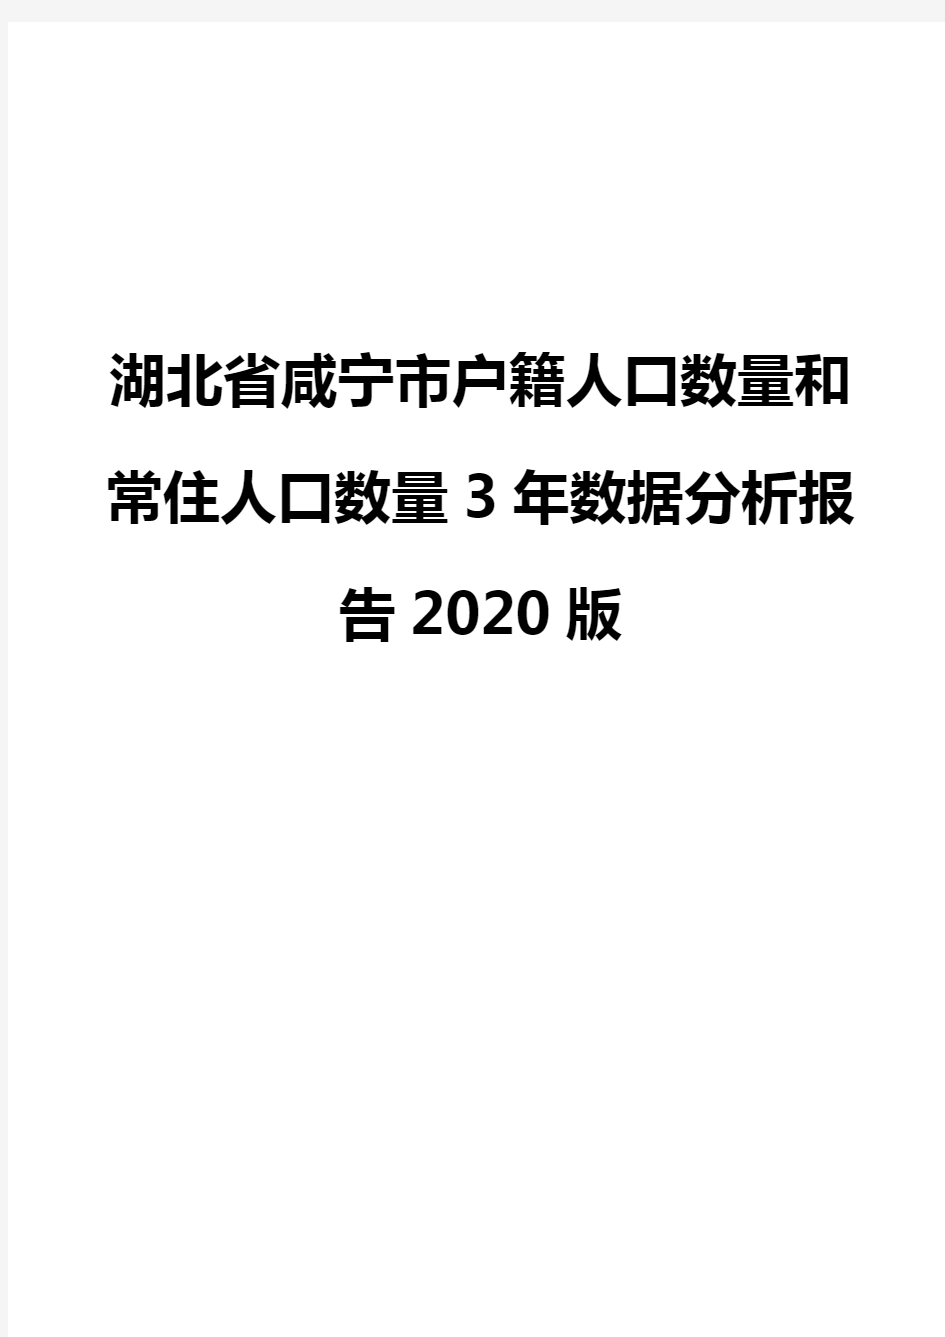 湖北省咸宁市户籍人口数量和常住人口数量3年数据分析报告2020版